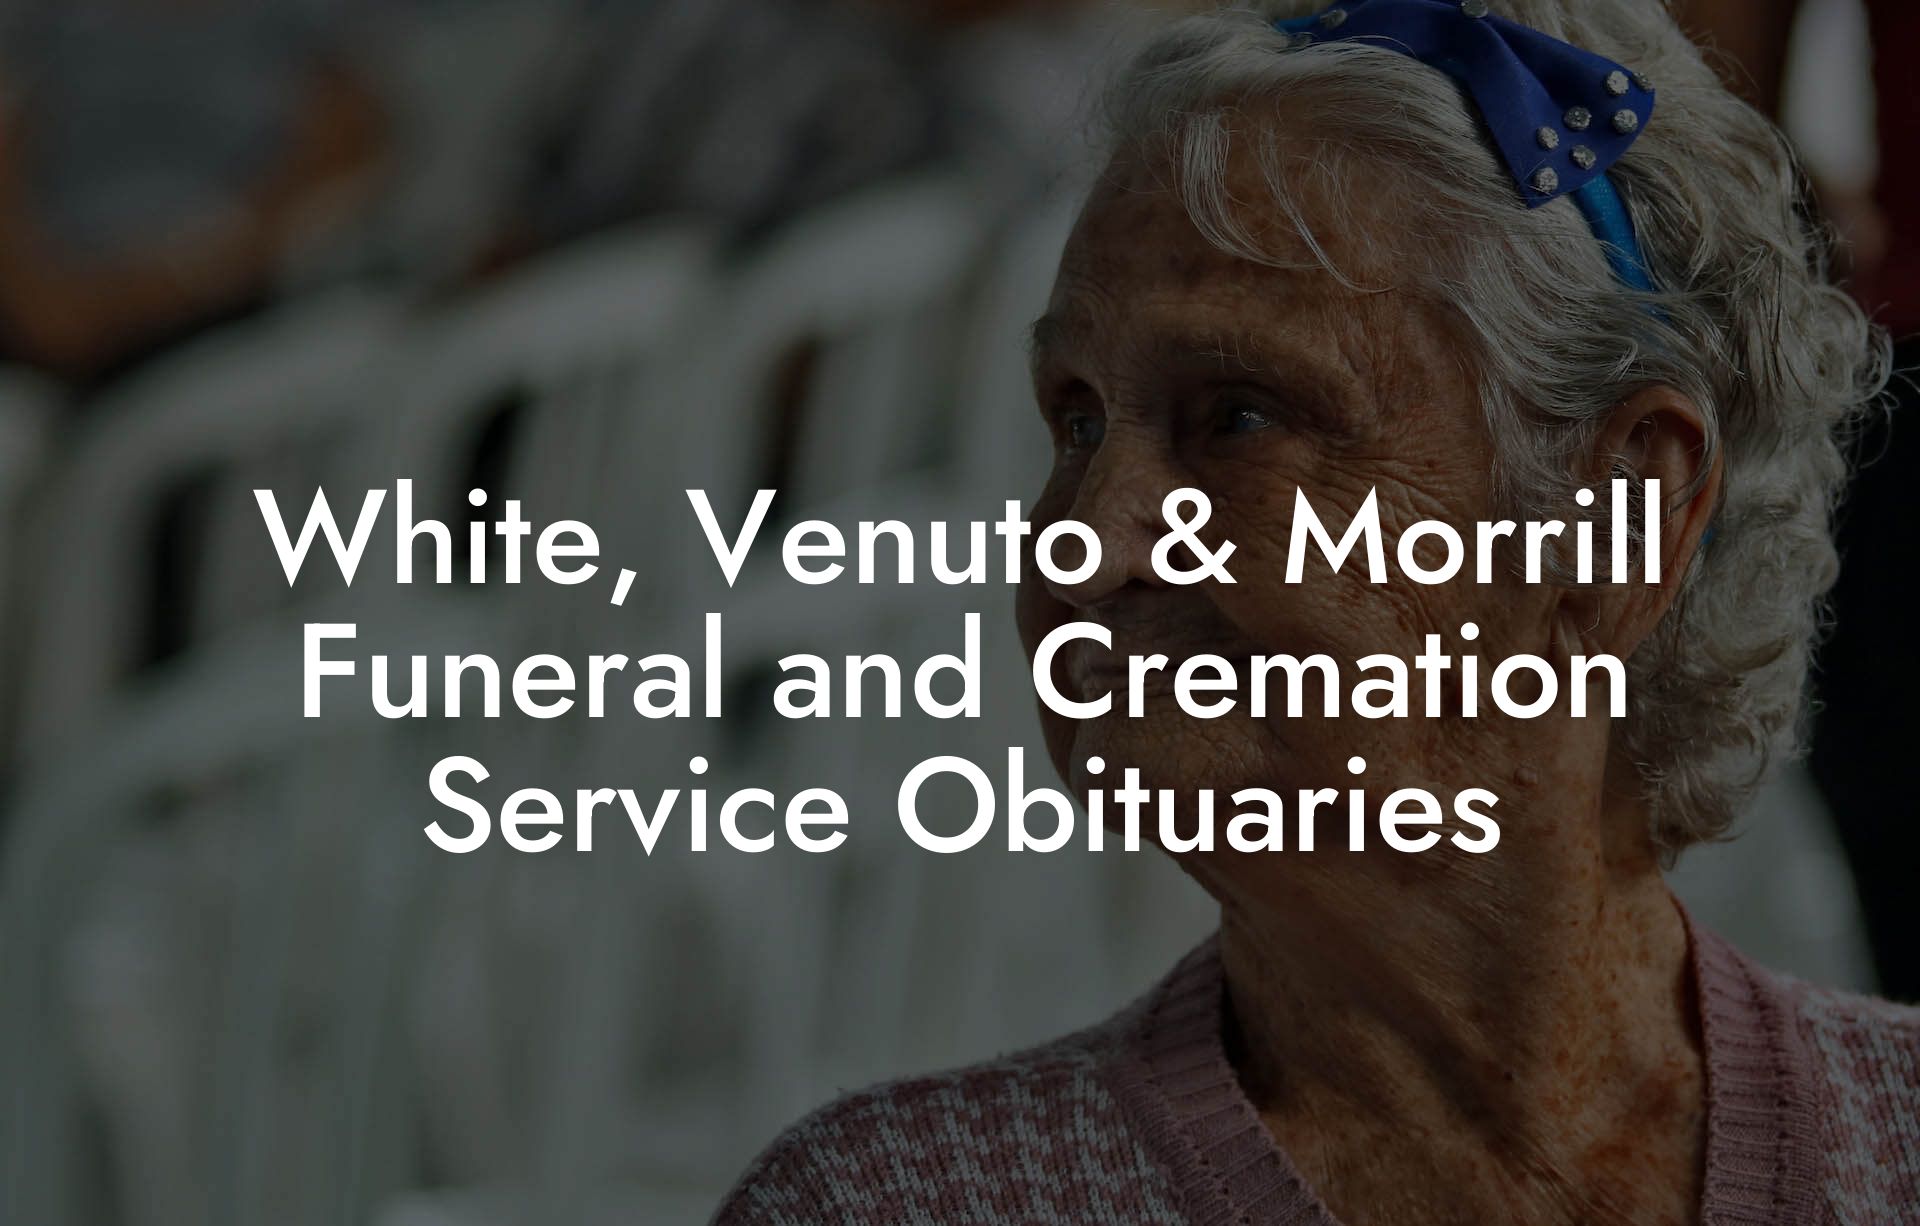 White, Venuto & Morrill Funeral and Cremation Service Obituaries